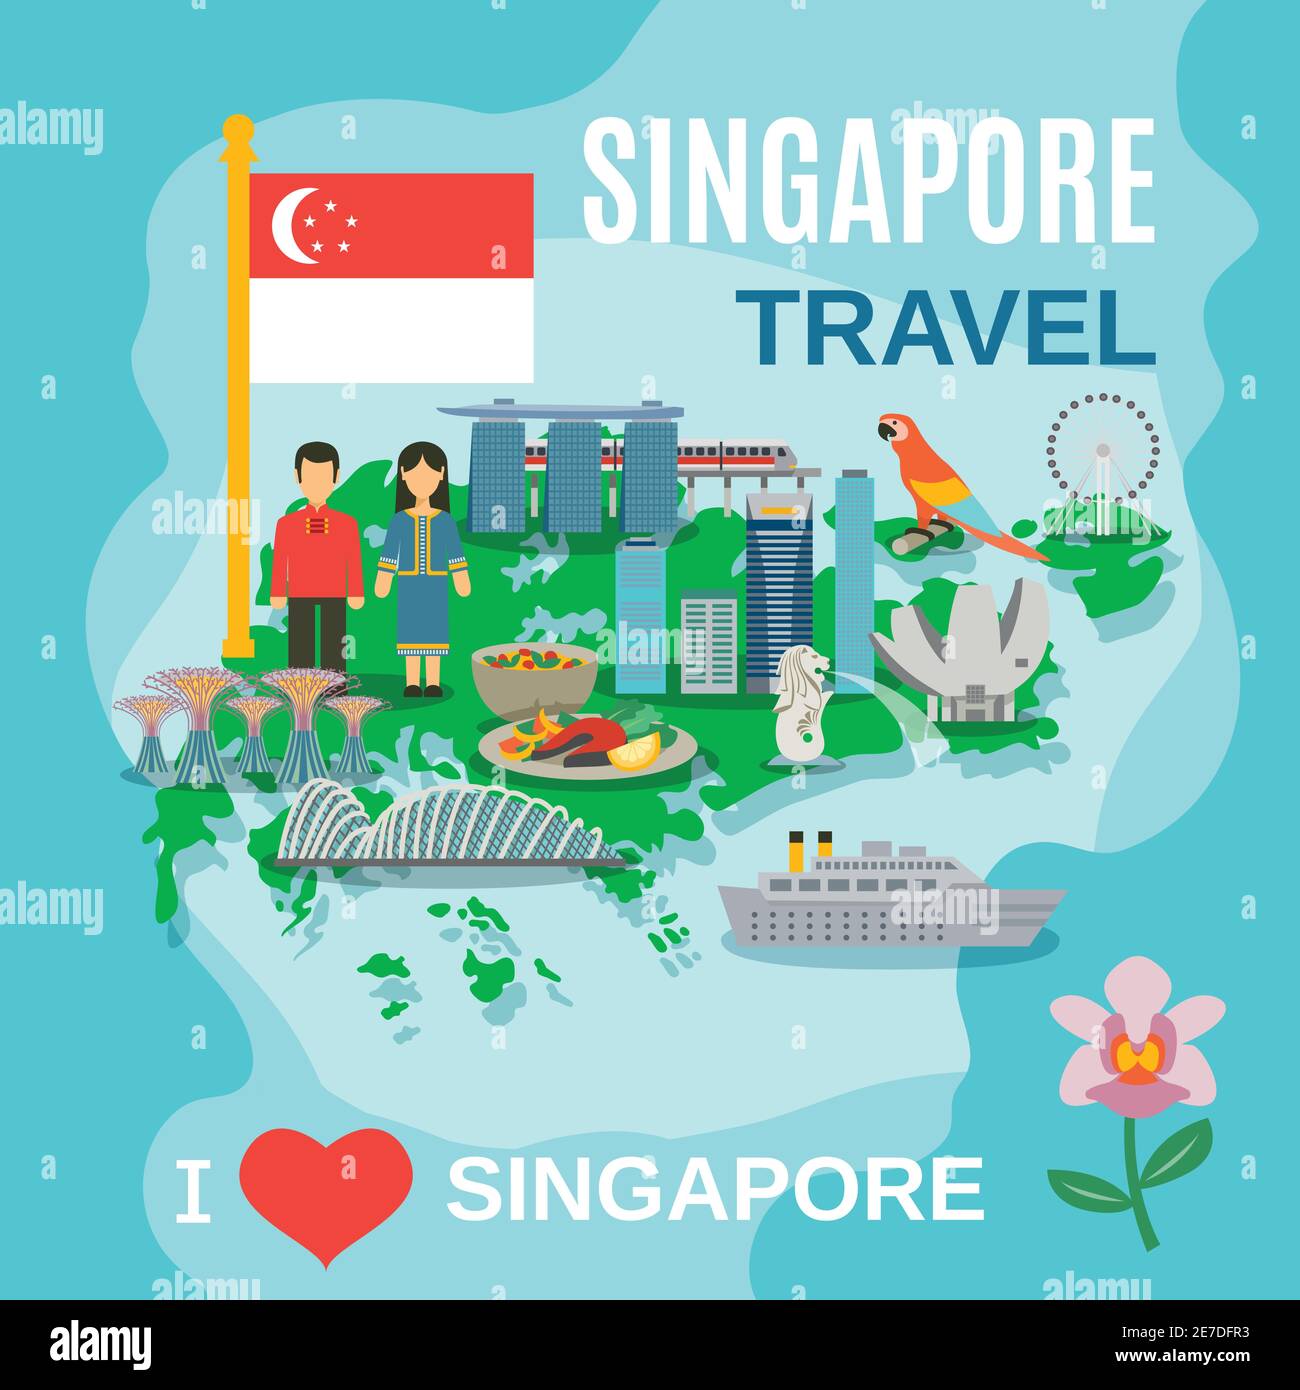 Affiche de voyage à Singapour avec des lieux d'intérêt et des symboles culturels sur l'illustration vectorielle abstraite plate de la carte Illustration de Vecteur